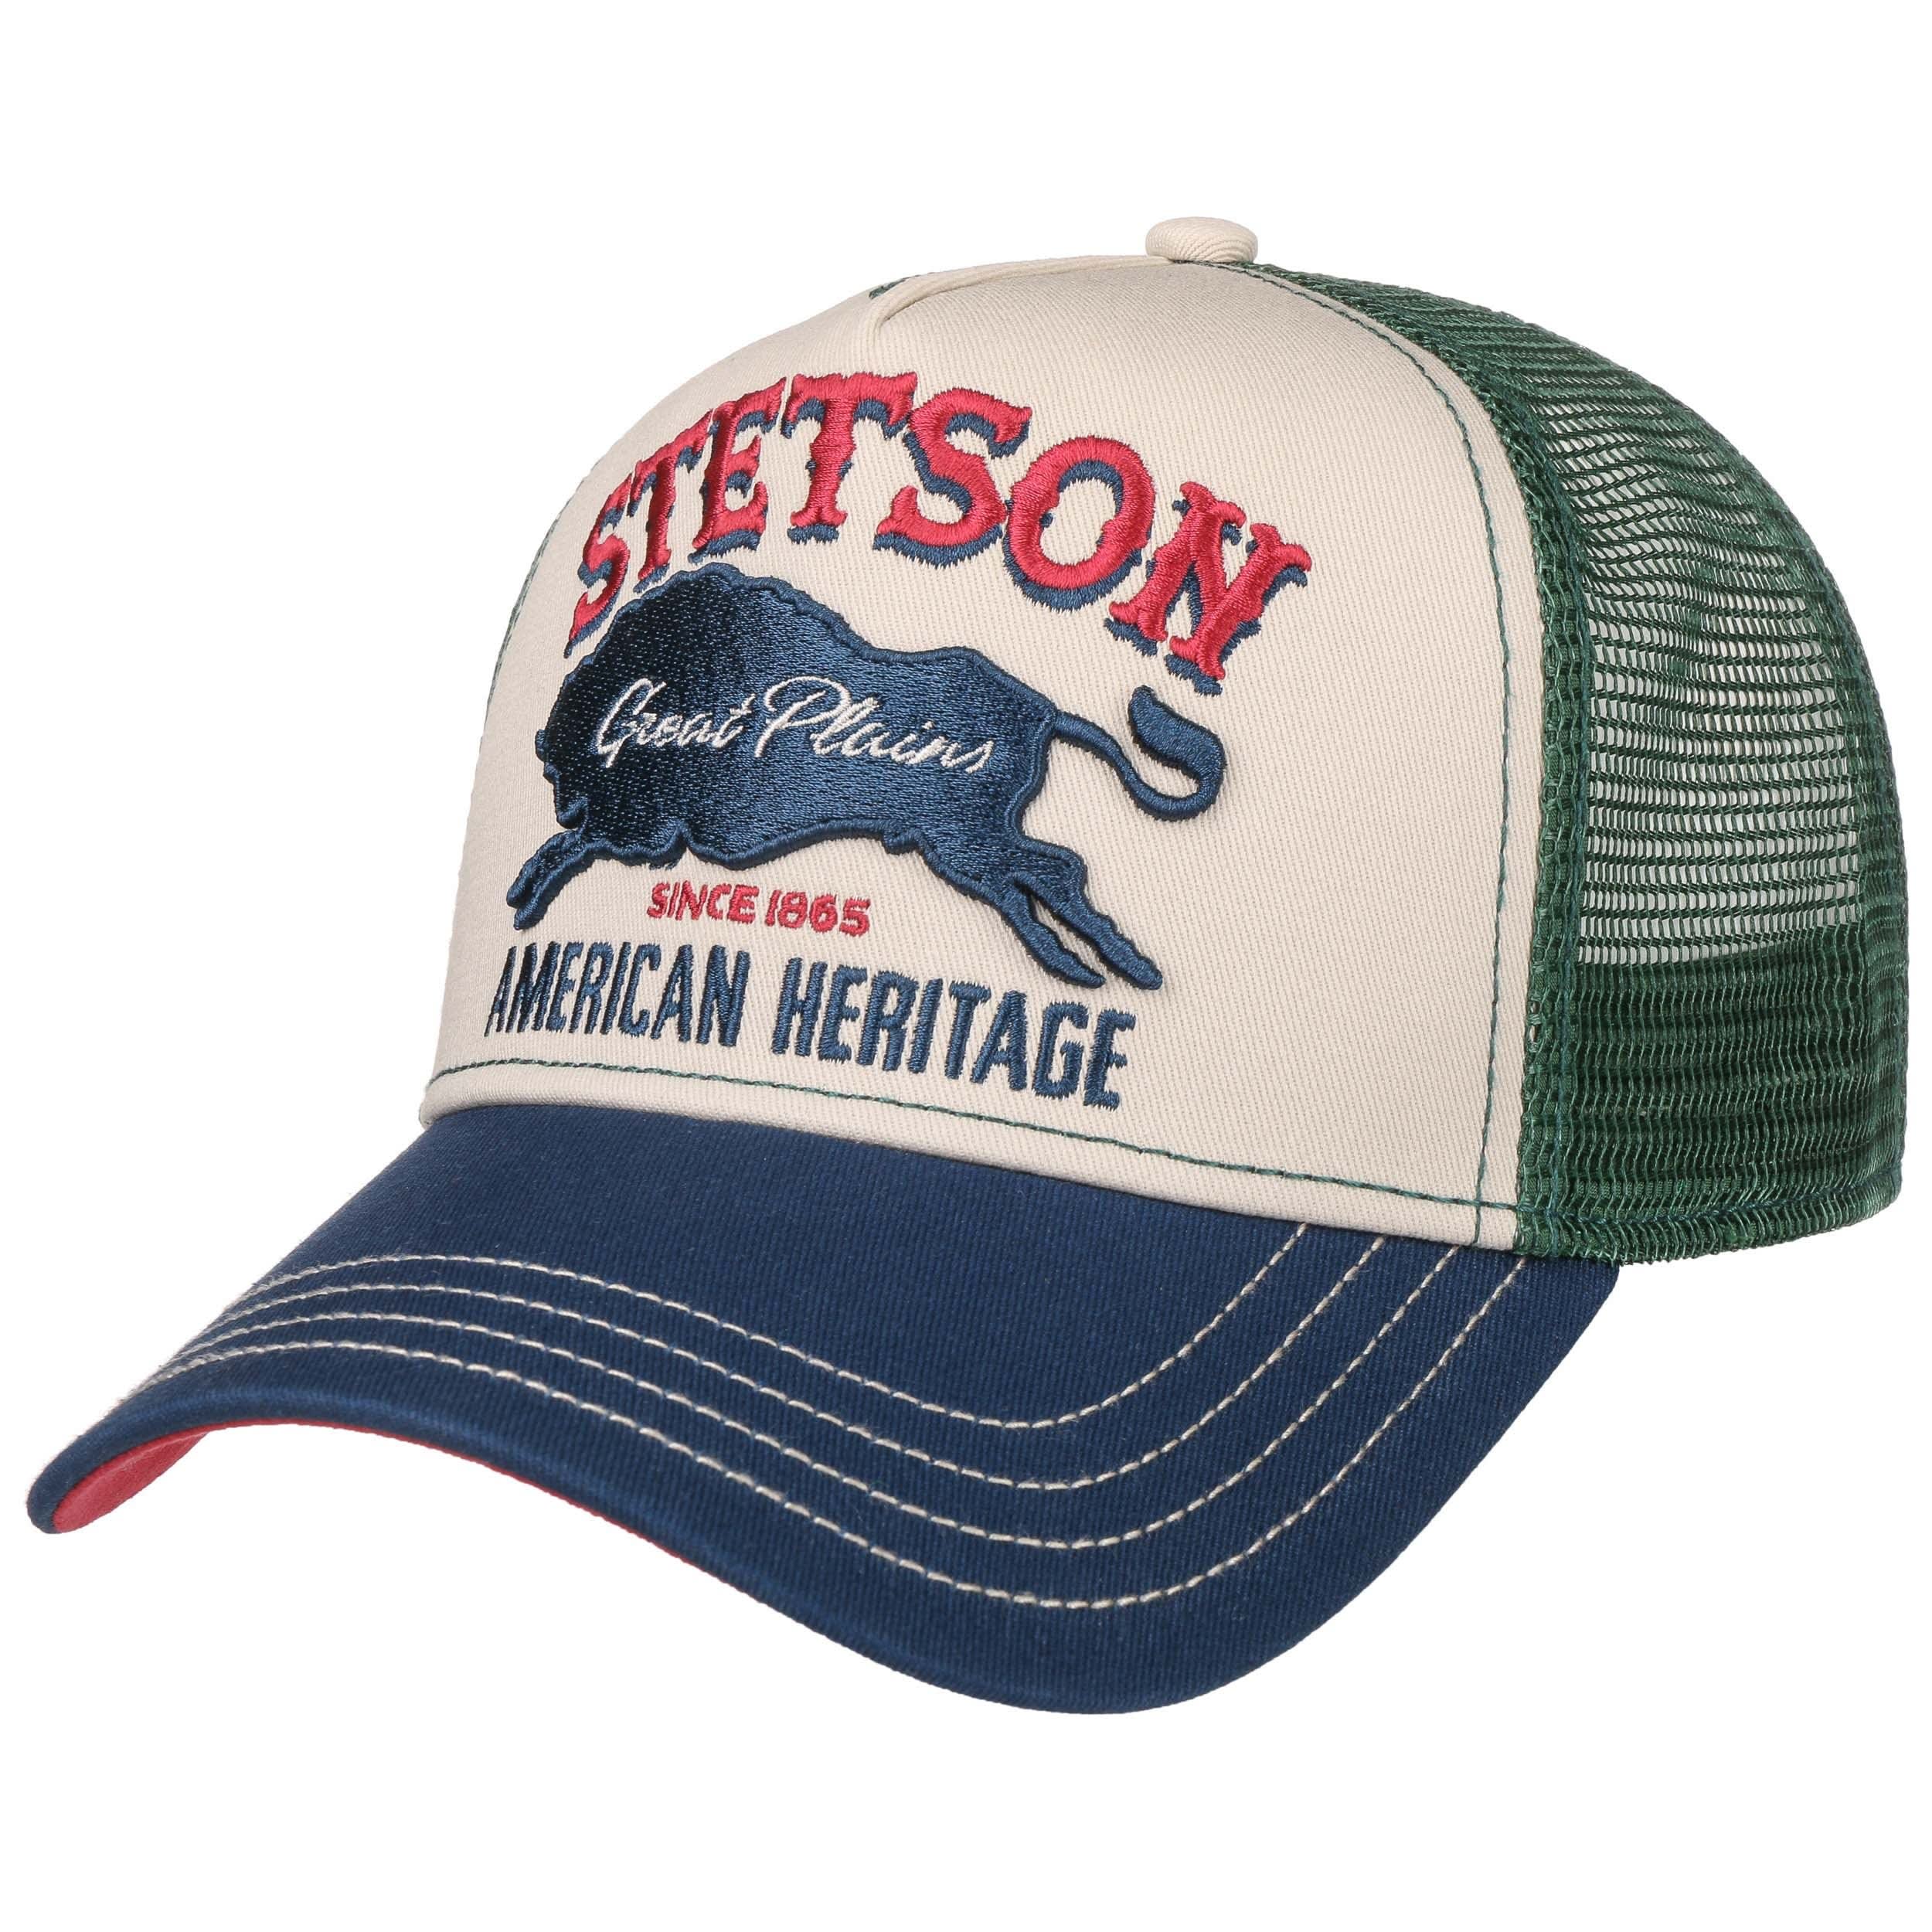 Stetson 7751152-25 Great plains trucker cap